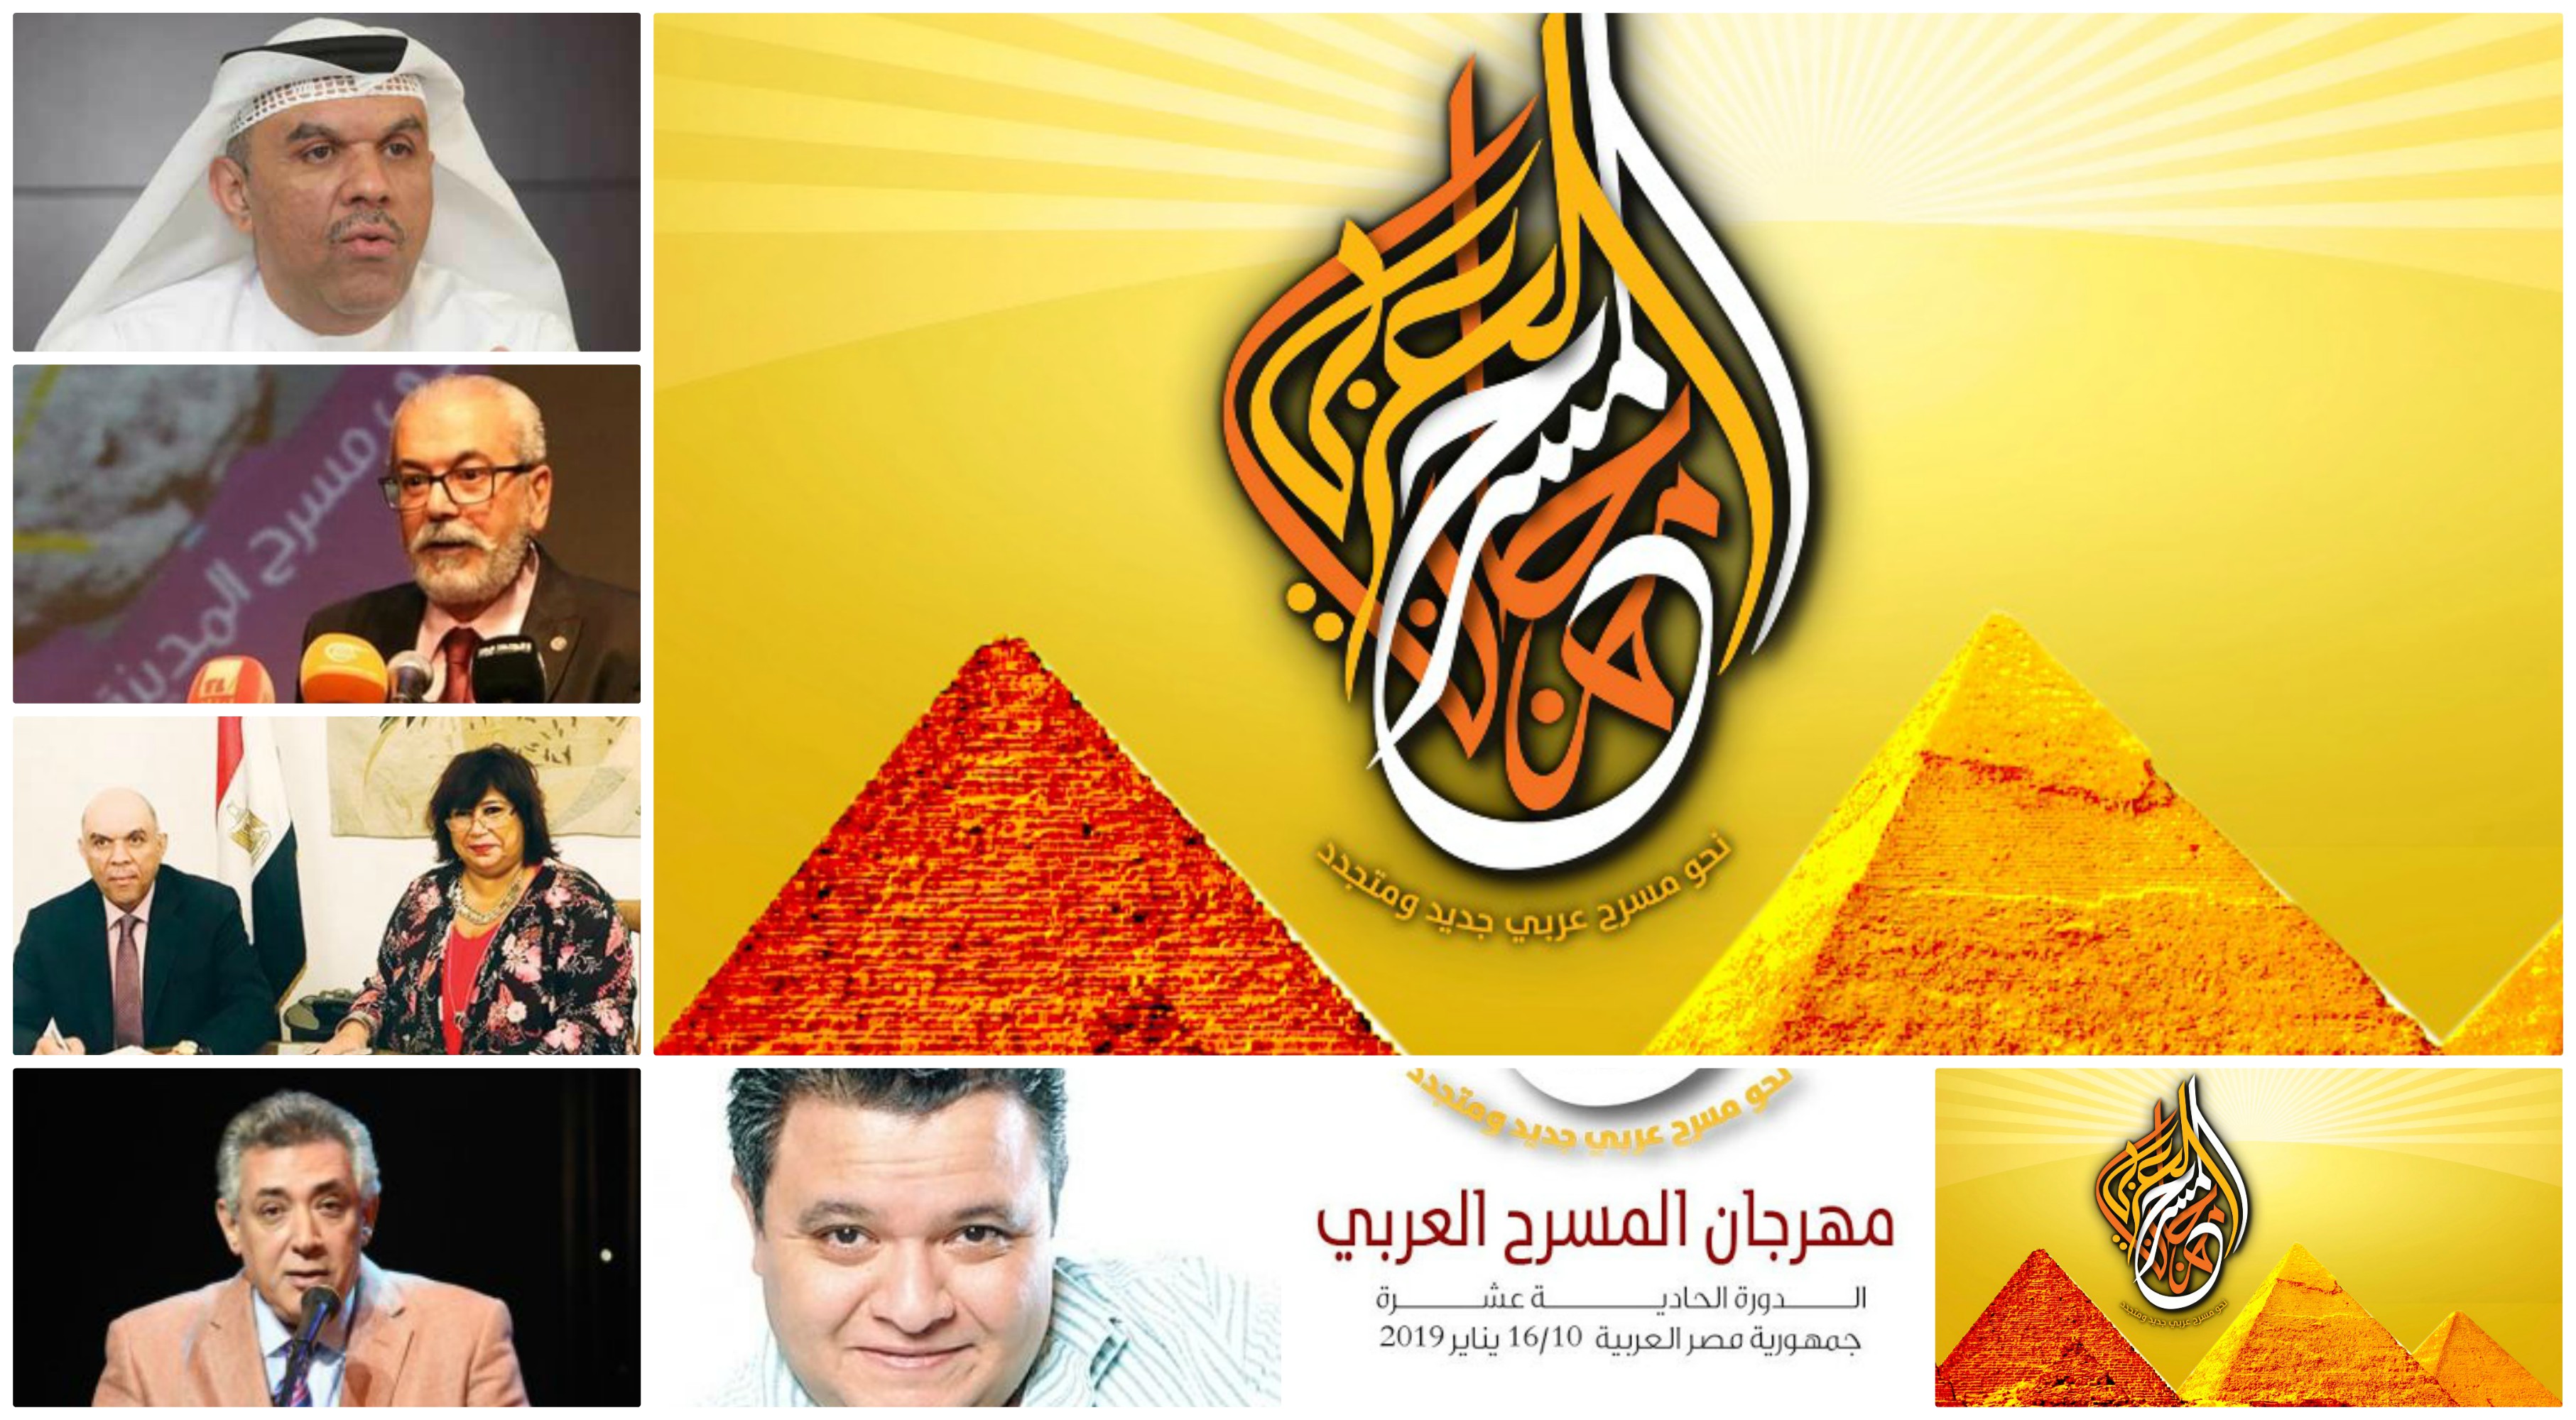 الدورة الحادية عشر لمهرجان المسرح العربي الذي تستضيفه مصر